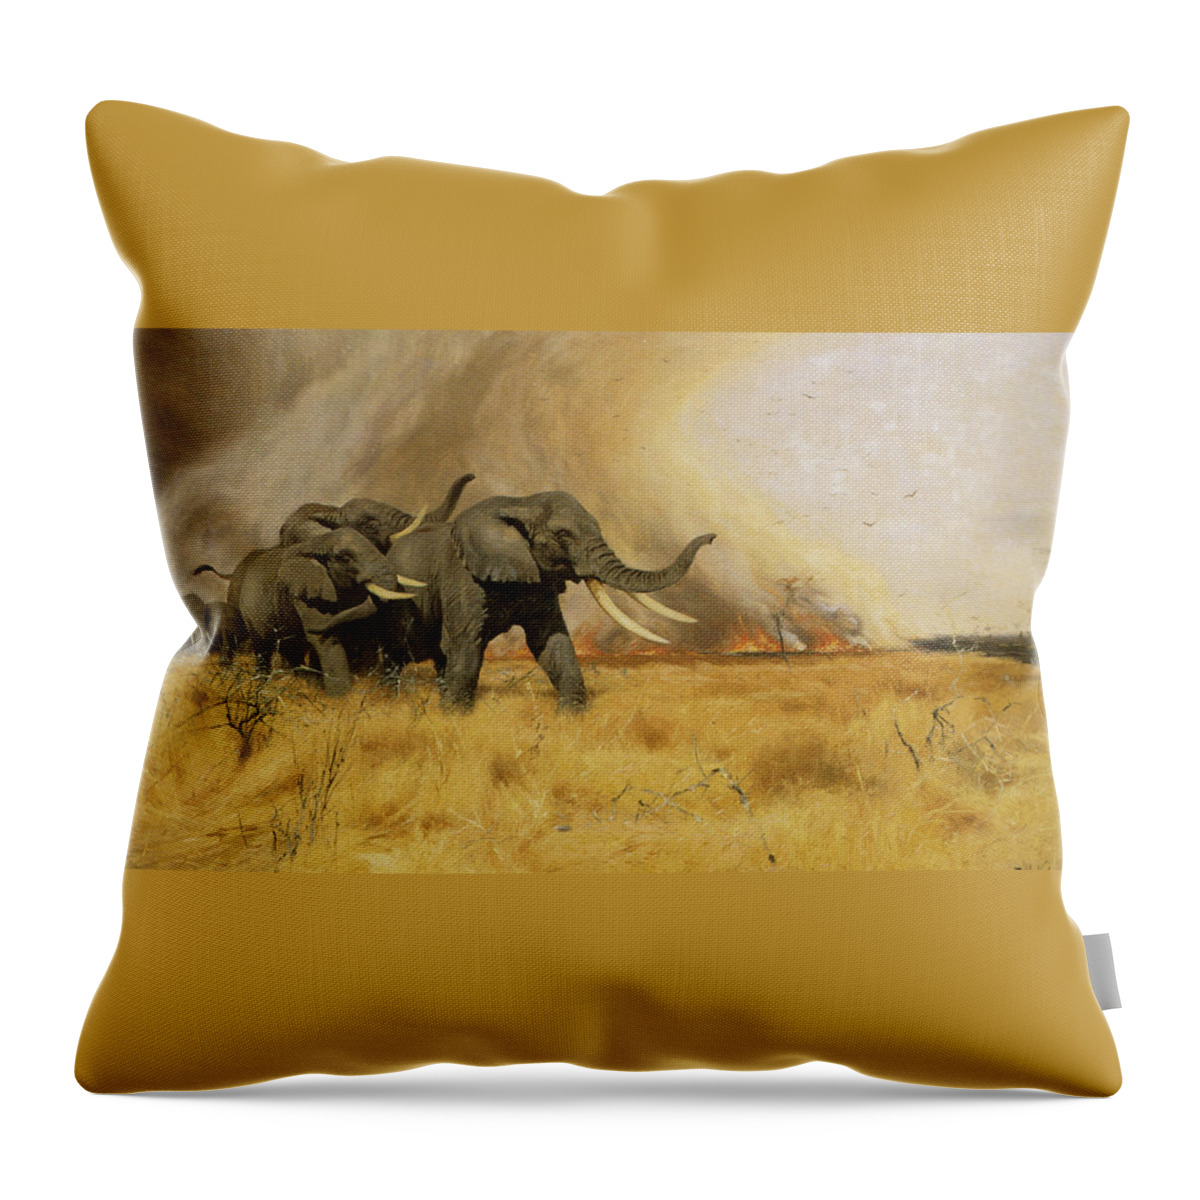 Friedrich Wilhelm Kuhnert Throw Pillow featuring the digital art Elephants Moving Before A Fire by Friedrich Wilhelm Kuhnert